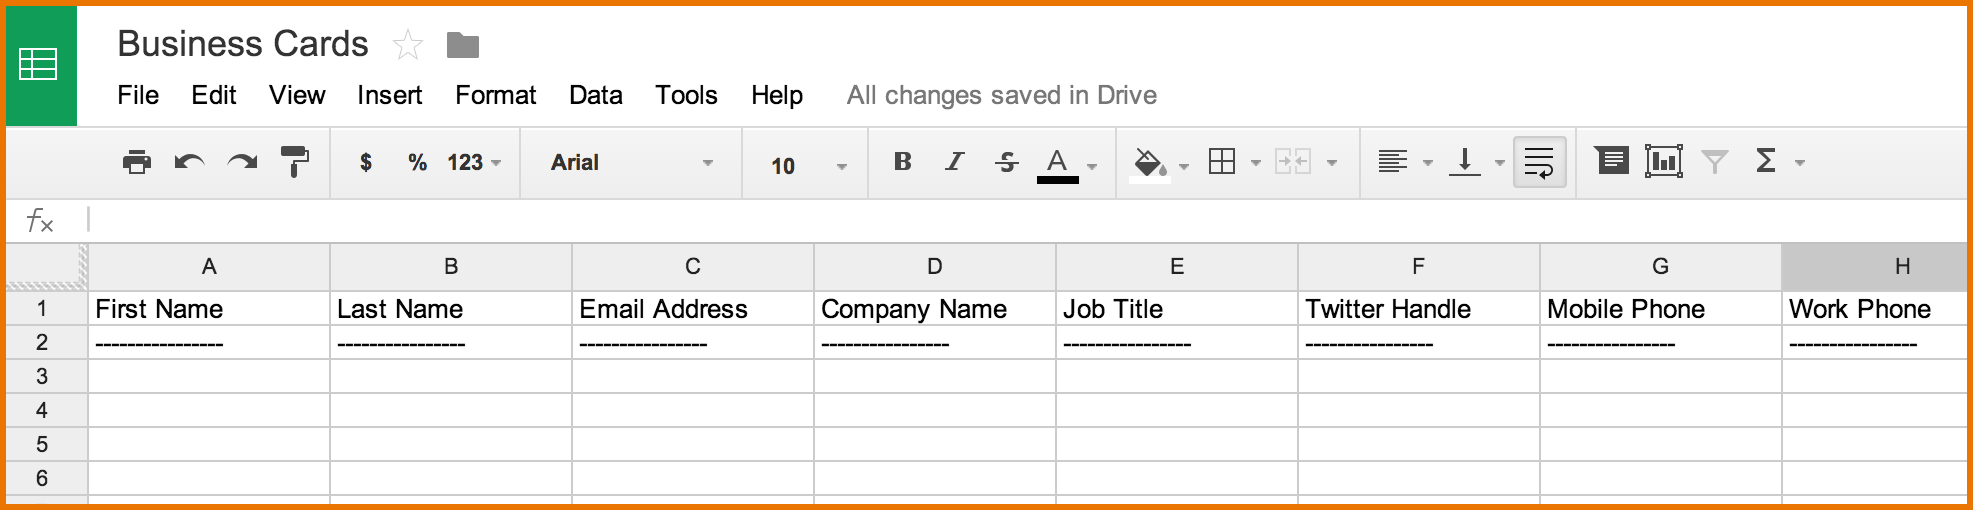 Google Docs Business Card Template.spreadsheet Capturing Inside Google Docs Business Card Template